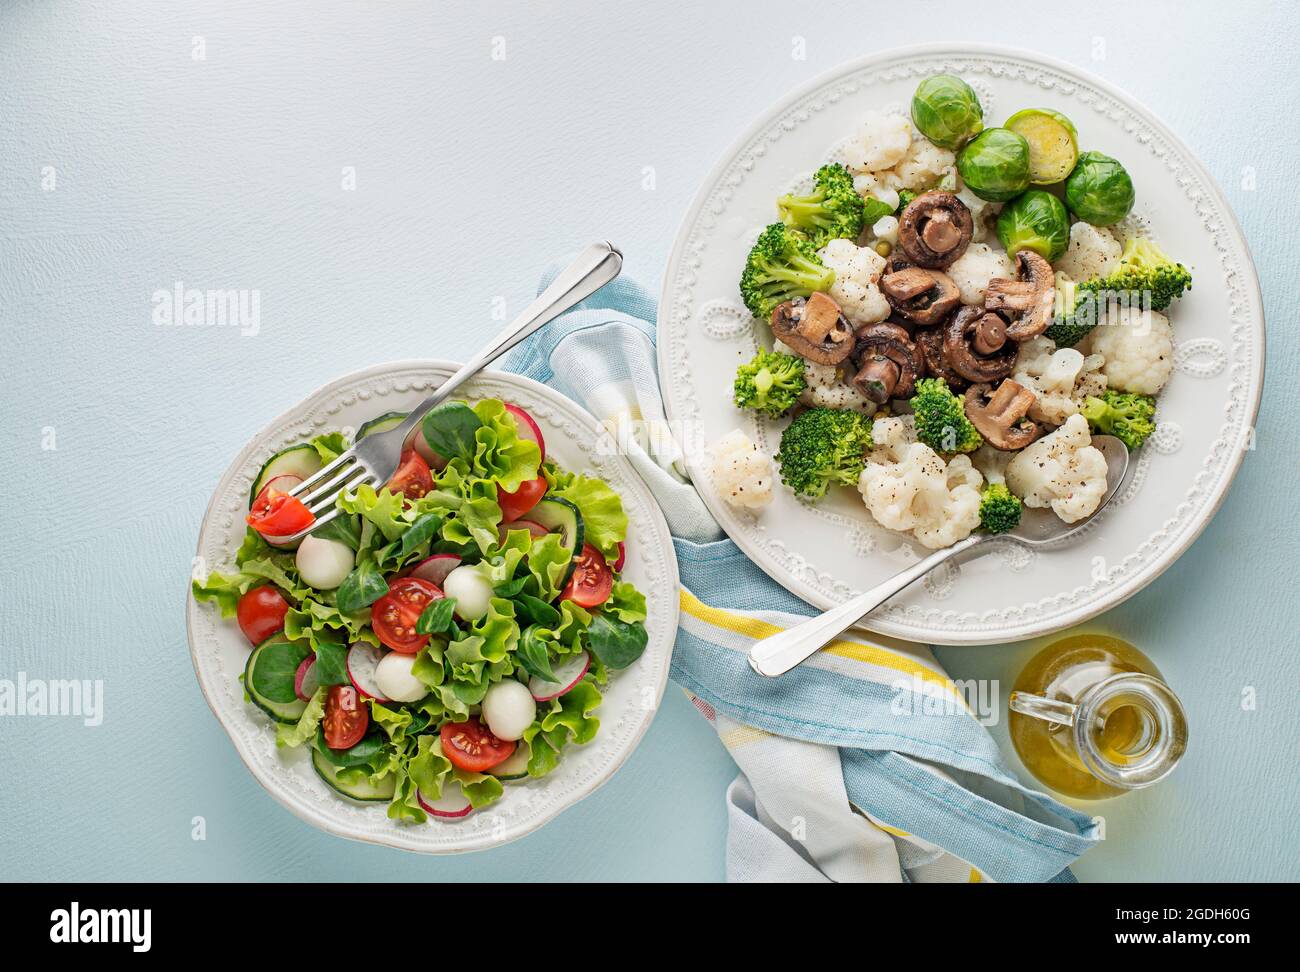 Repas de salade sains avec légumes cuits et salade fraîche. Repas sain de régime de légumes. Banque D'Images